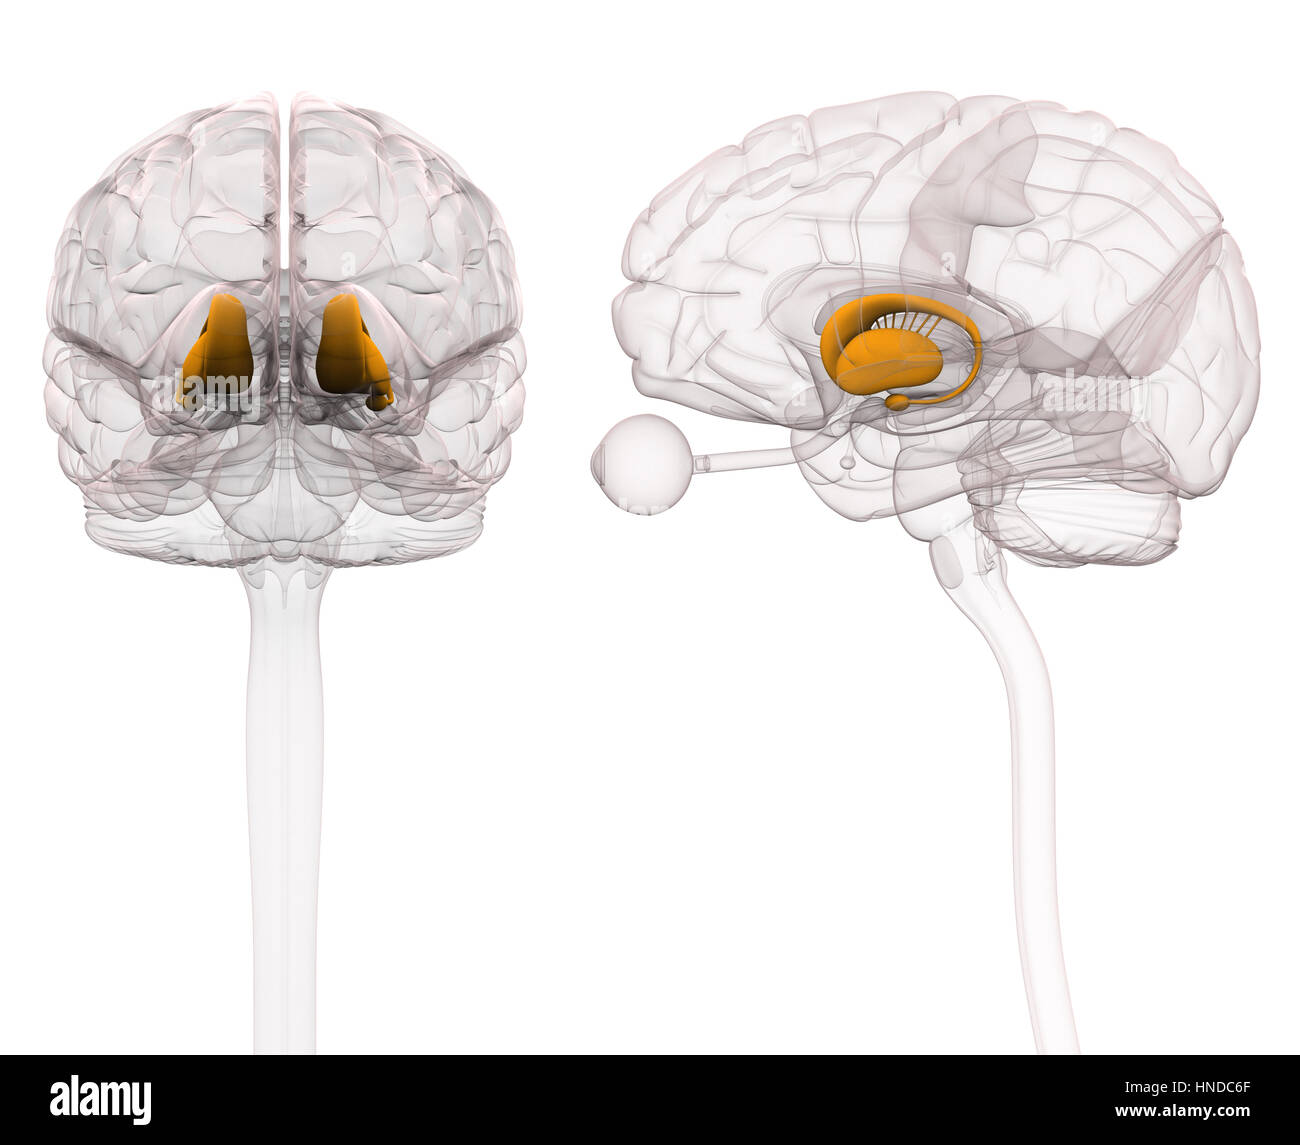 Basalganglien - Anatomie Gehirn - 3D-Illustration Stockfoto